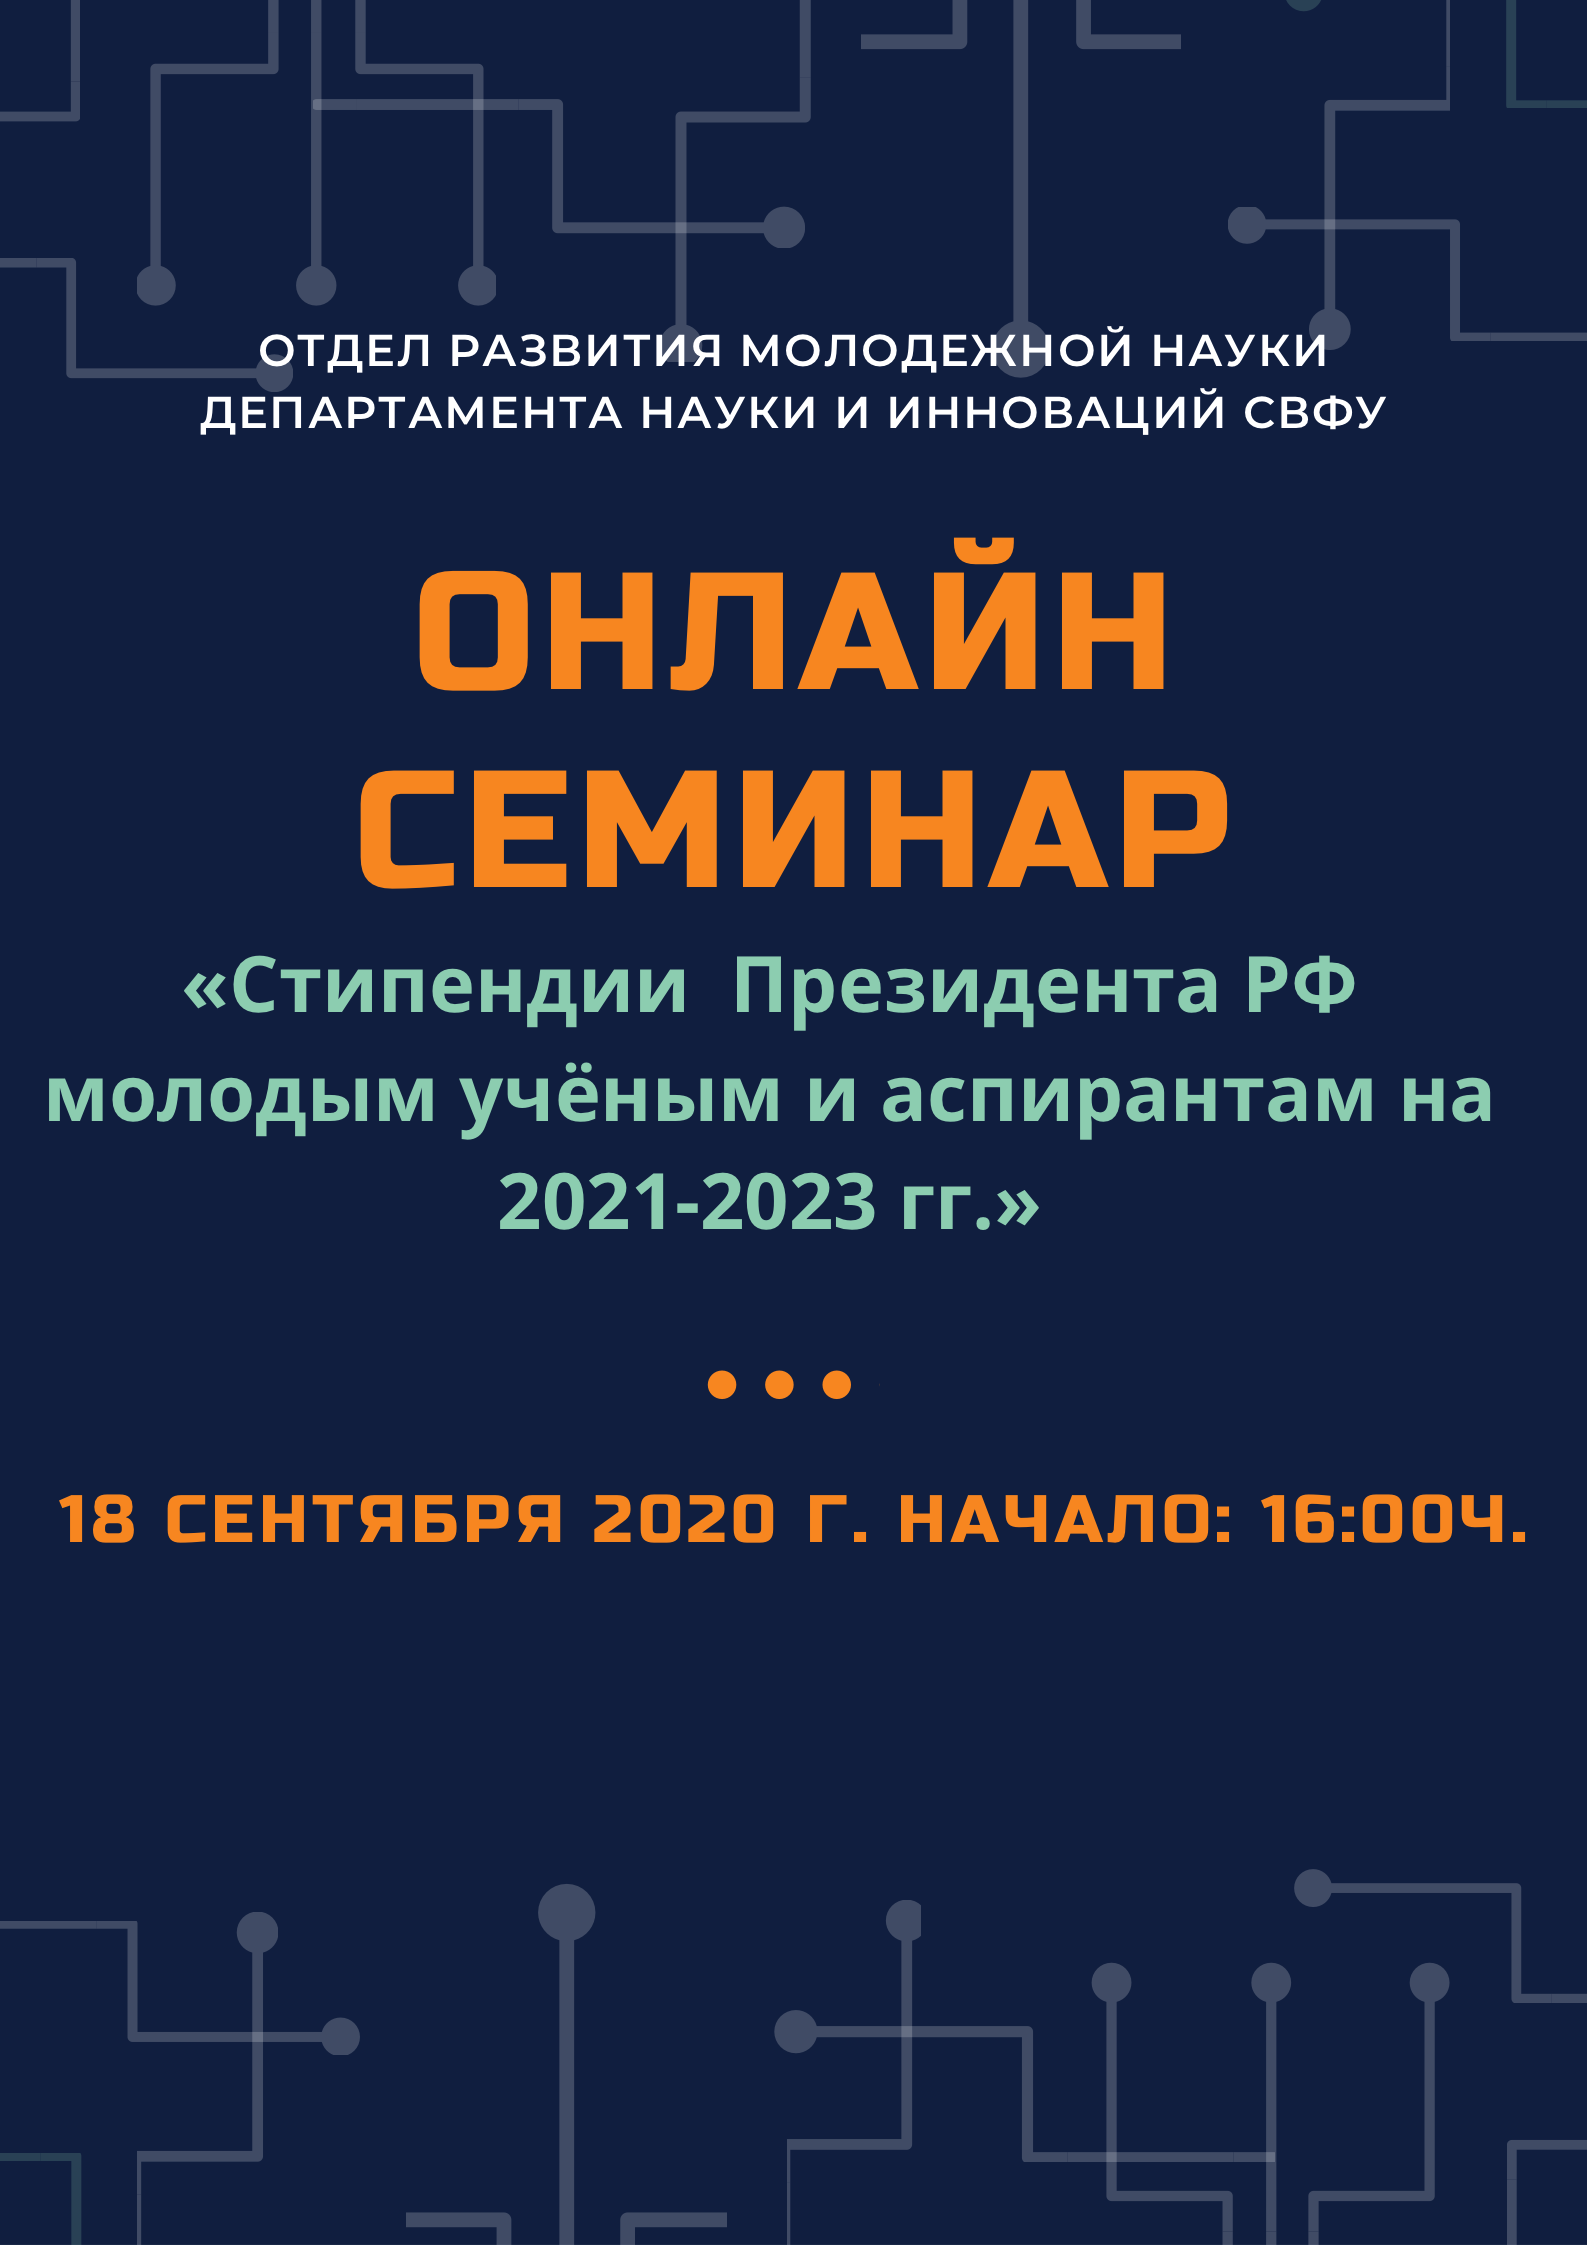 Онлайн семинар по конкурсному отбору получателей Стипендий Президента РФ молодым учёным и аспирантам